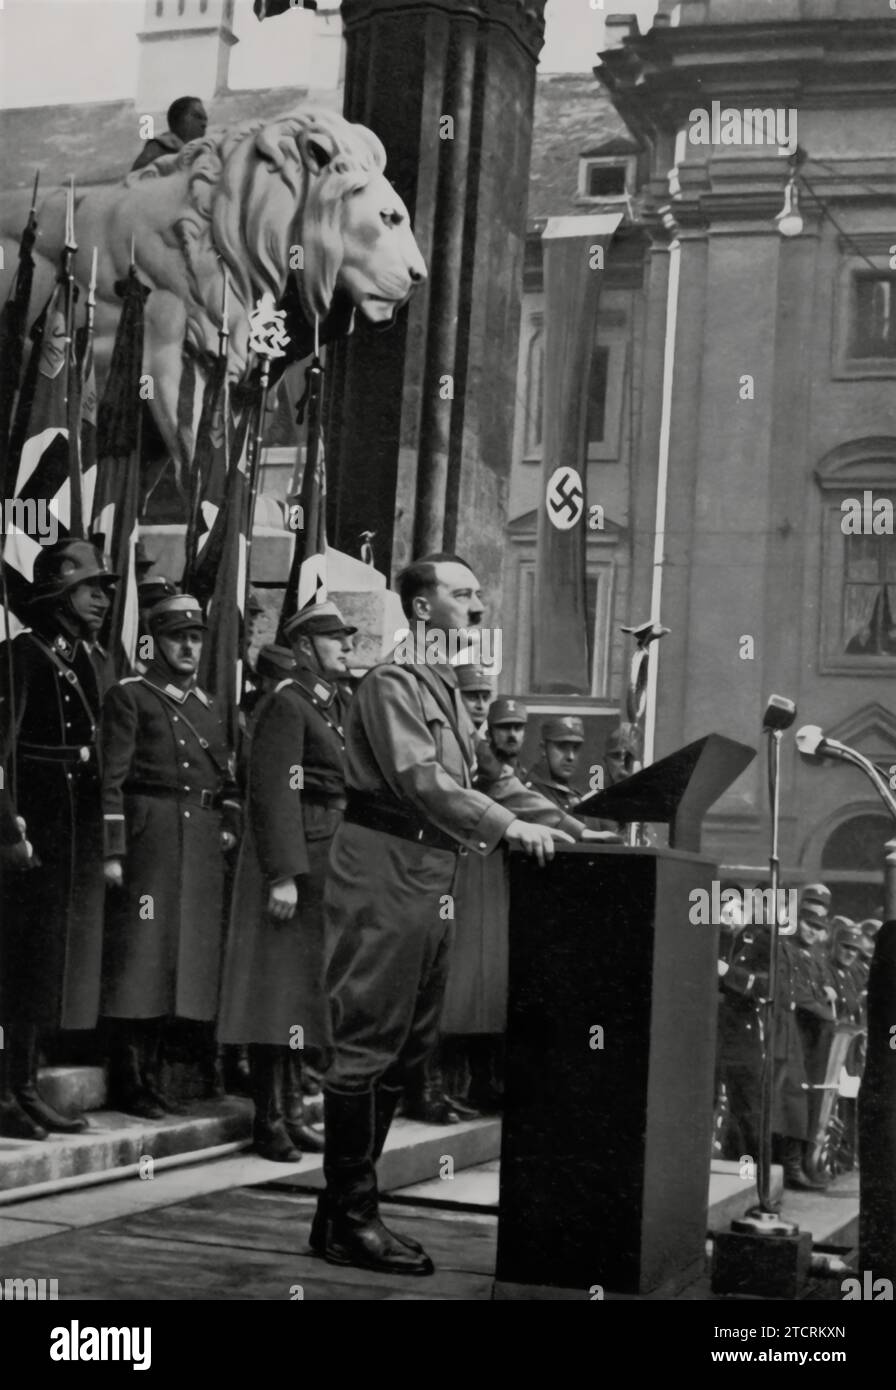 Im November 1934 wird Adolf Hitler in München gefangen genommen und spricht vor der Feldherrnhalle vor den neuen Mitgliedern der Hitlerjugend und des Deutschen Mädchenbundes. Dieses Ereignis war ein bedeutender Moment, als Hitler sich an die jüngere Generation wandte, die in diese Nazi-Organisationen aufgenommen wurde. Die Feldherrnhalle, ein symbolischer Ort in München, bildete eine historisch resonante Kulisse für diesen Anlass. Stockfoto